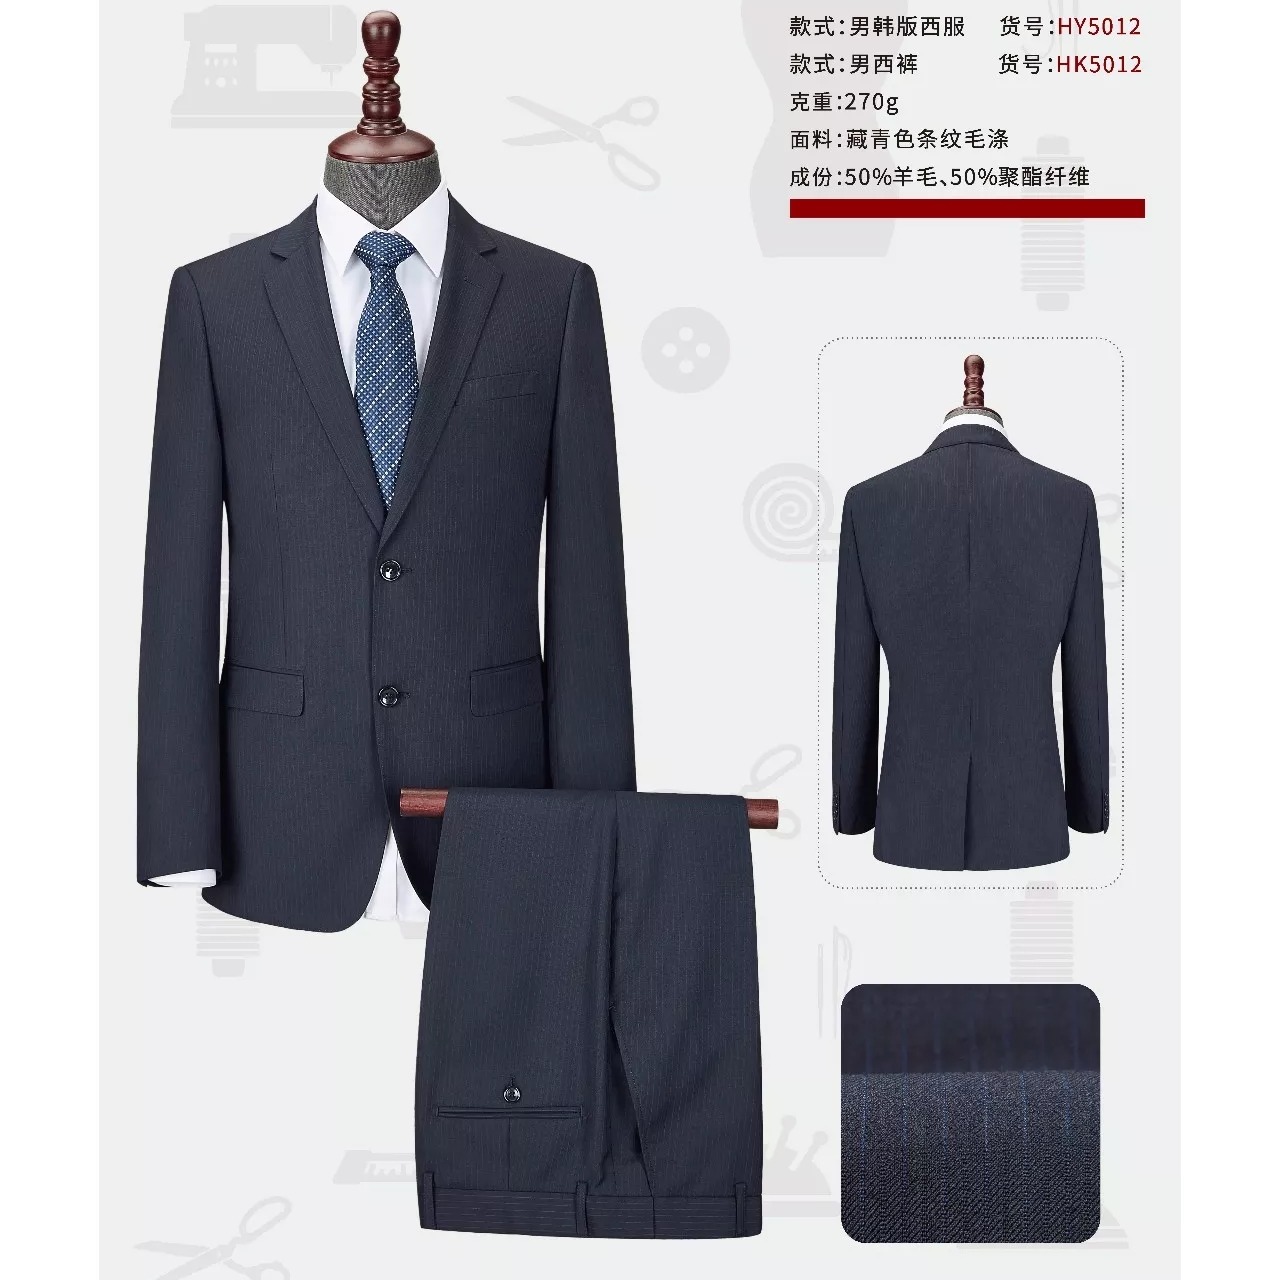 款式新颖 设计时尚 西安西服厂家定做 男式西服套装 西安职业西装